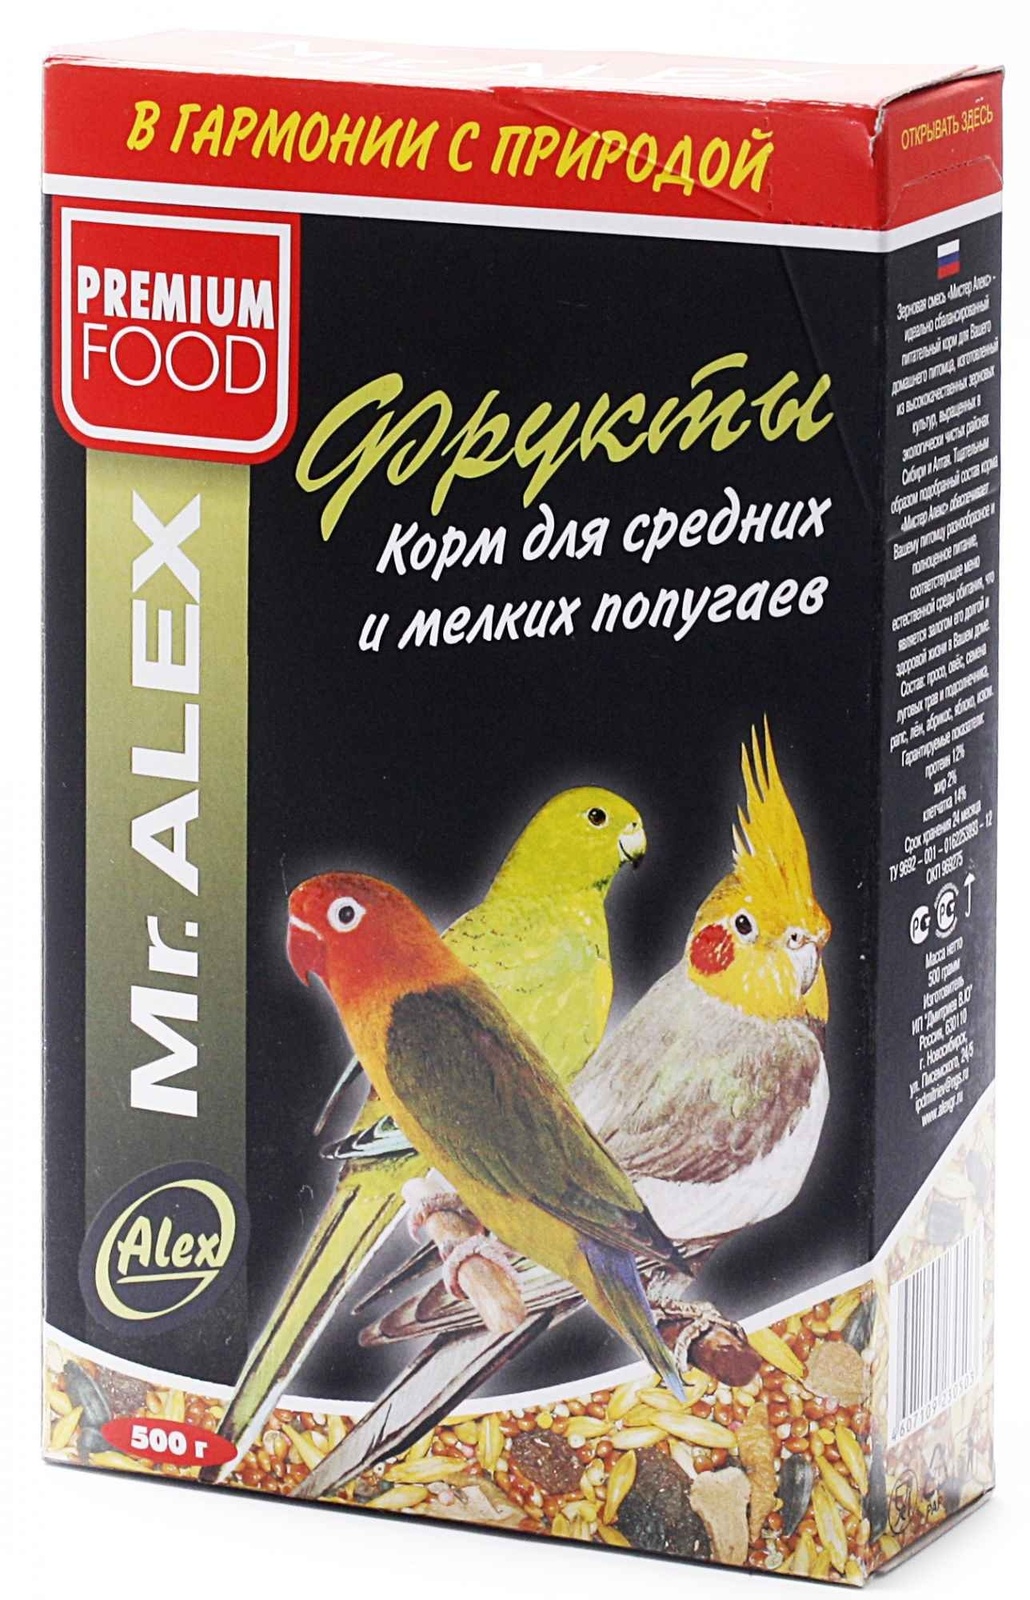 Mr.Alex Mr.Alex корм для средних и мелких попугаев Фрукты (500 г) mr alex mr alex корм для попугаев минерал 500 г